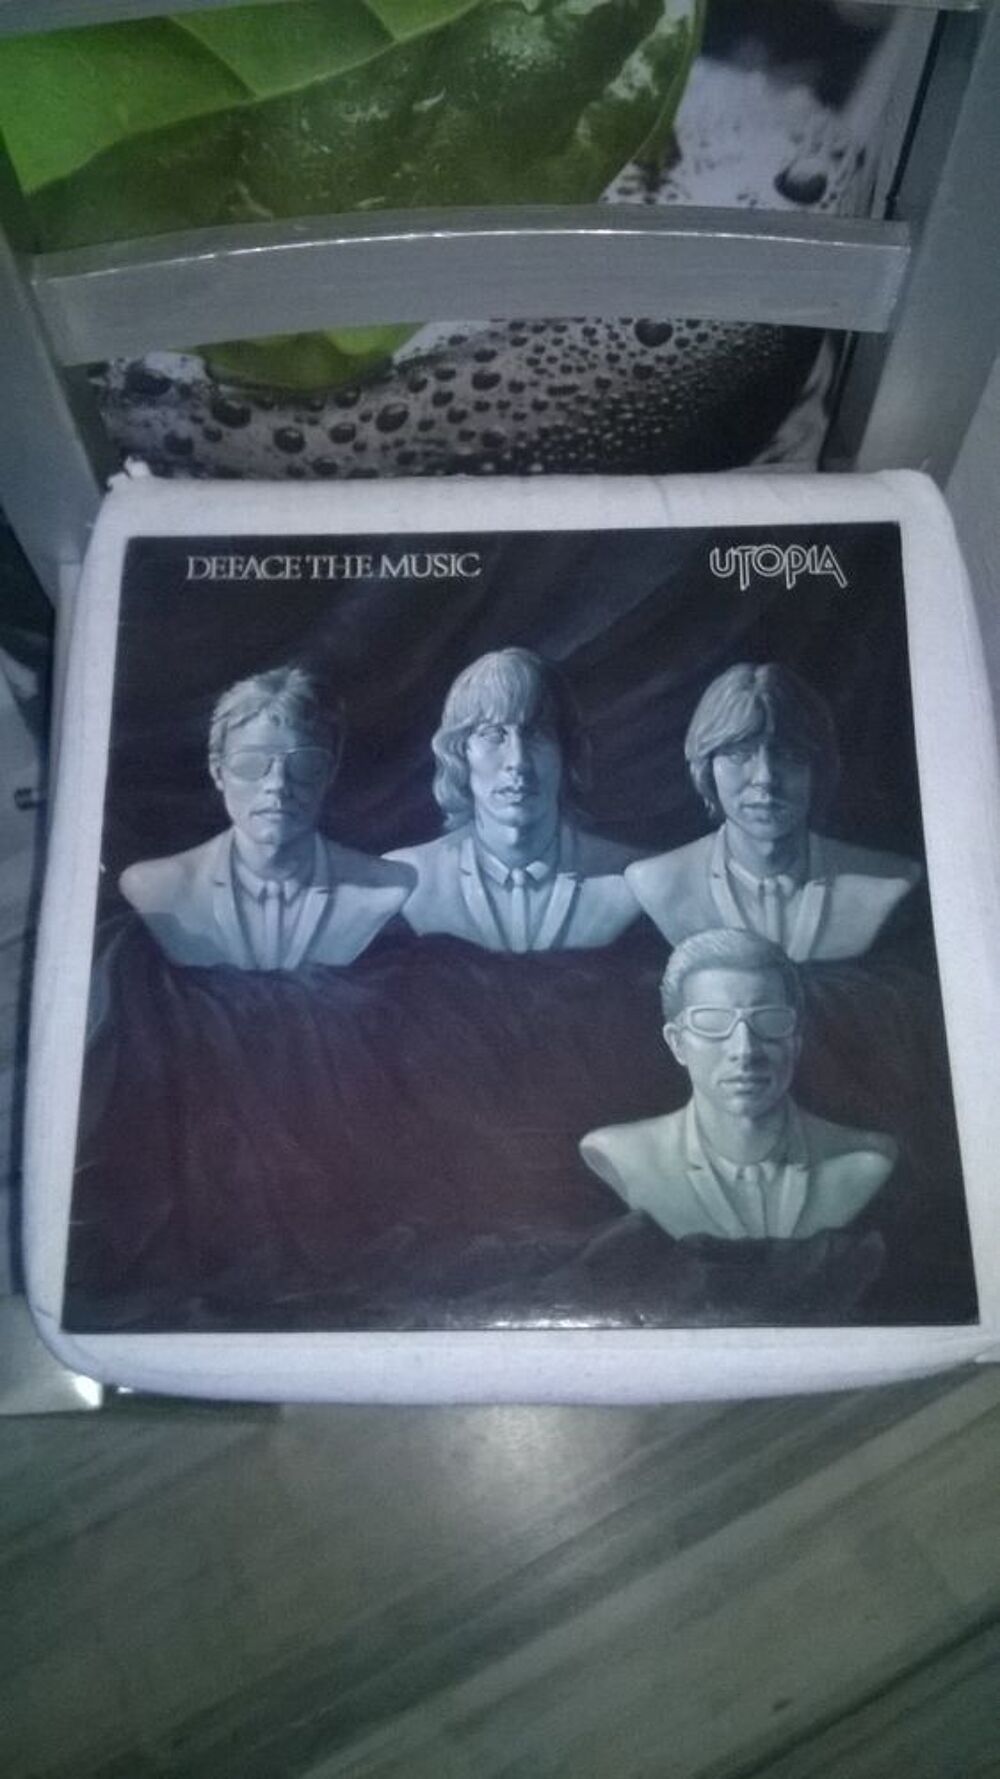 Vinyle Utopia
Deface The Music
1980
Excellent etat
I Jus CD et vinyles